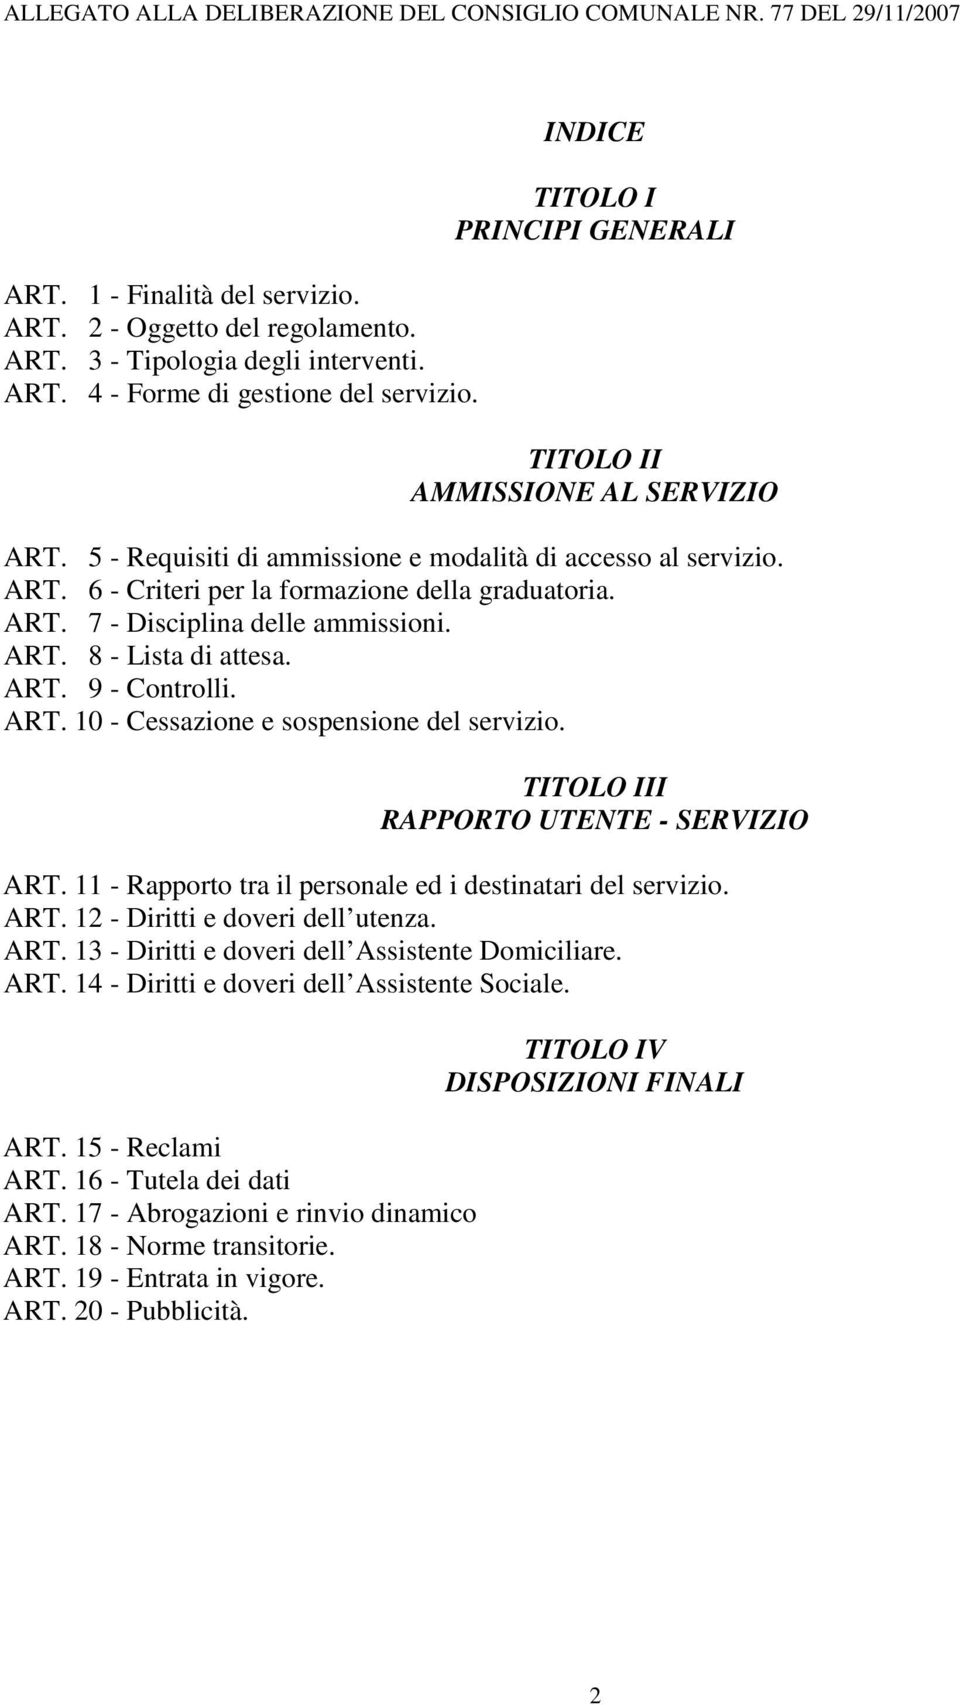 ART. 8 - Lista di attesa. ART. 9 - Controlli. ART. 10 - Cessazione e sospensione del servizio. TITOLO III RAPPORTO UTENTE - SERVIZIO ART. 11 - Rapporto tra il personale ed i destinatari del servizio.